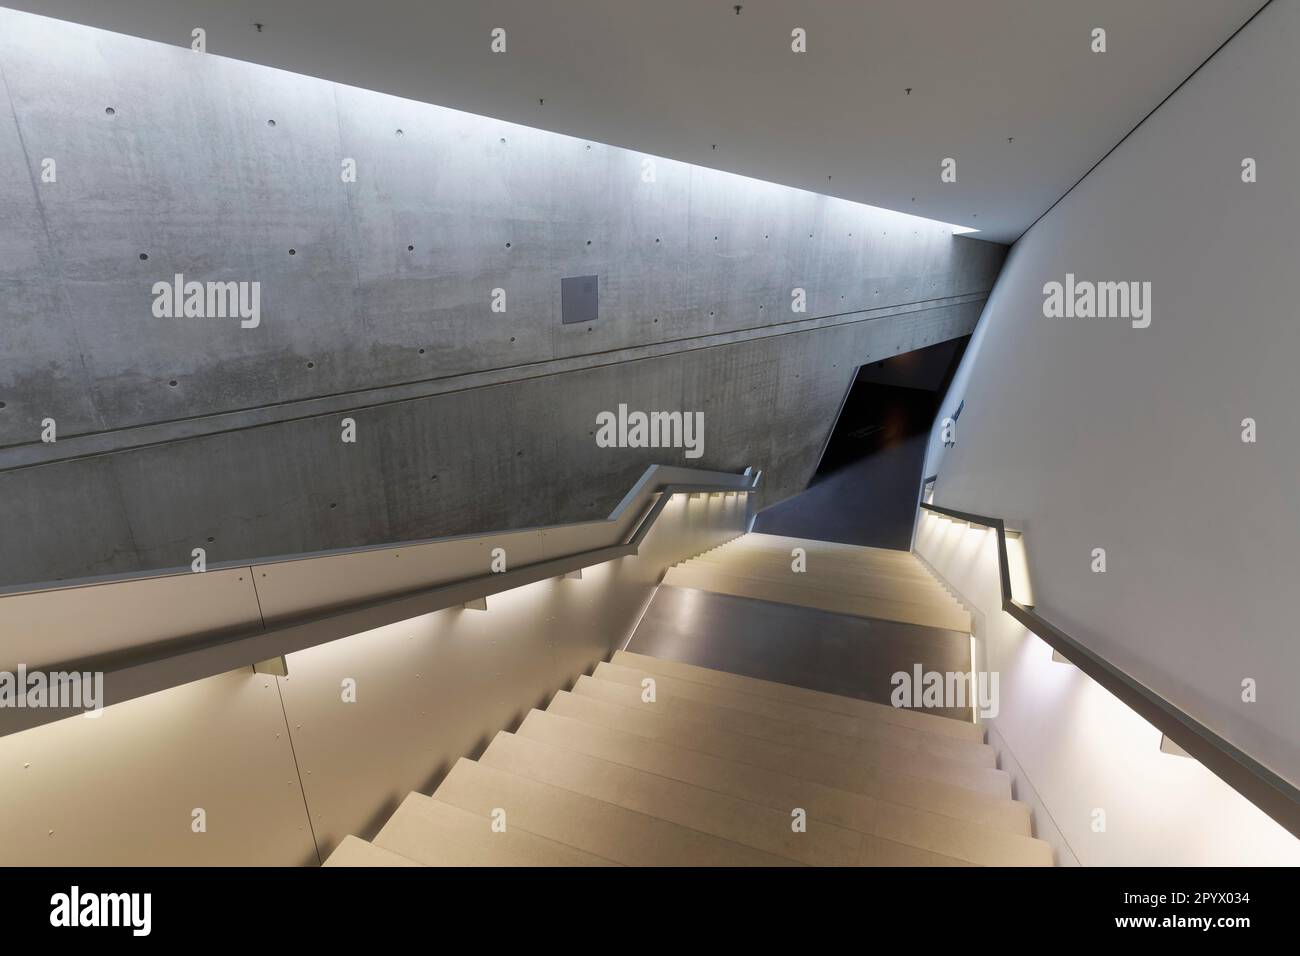 Musée d'Histoire militaire des Forces armées allemandes, escalier, architecte Daniel Libeskind, Dresde, Saxe, Allemagne Banque D'Images